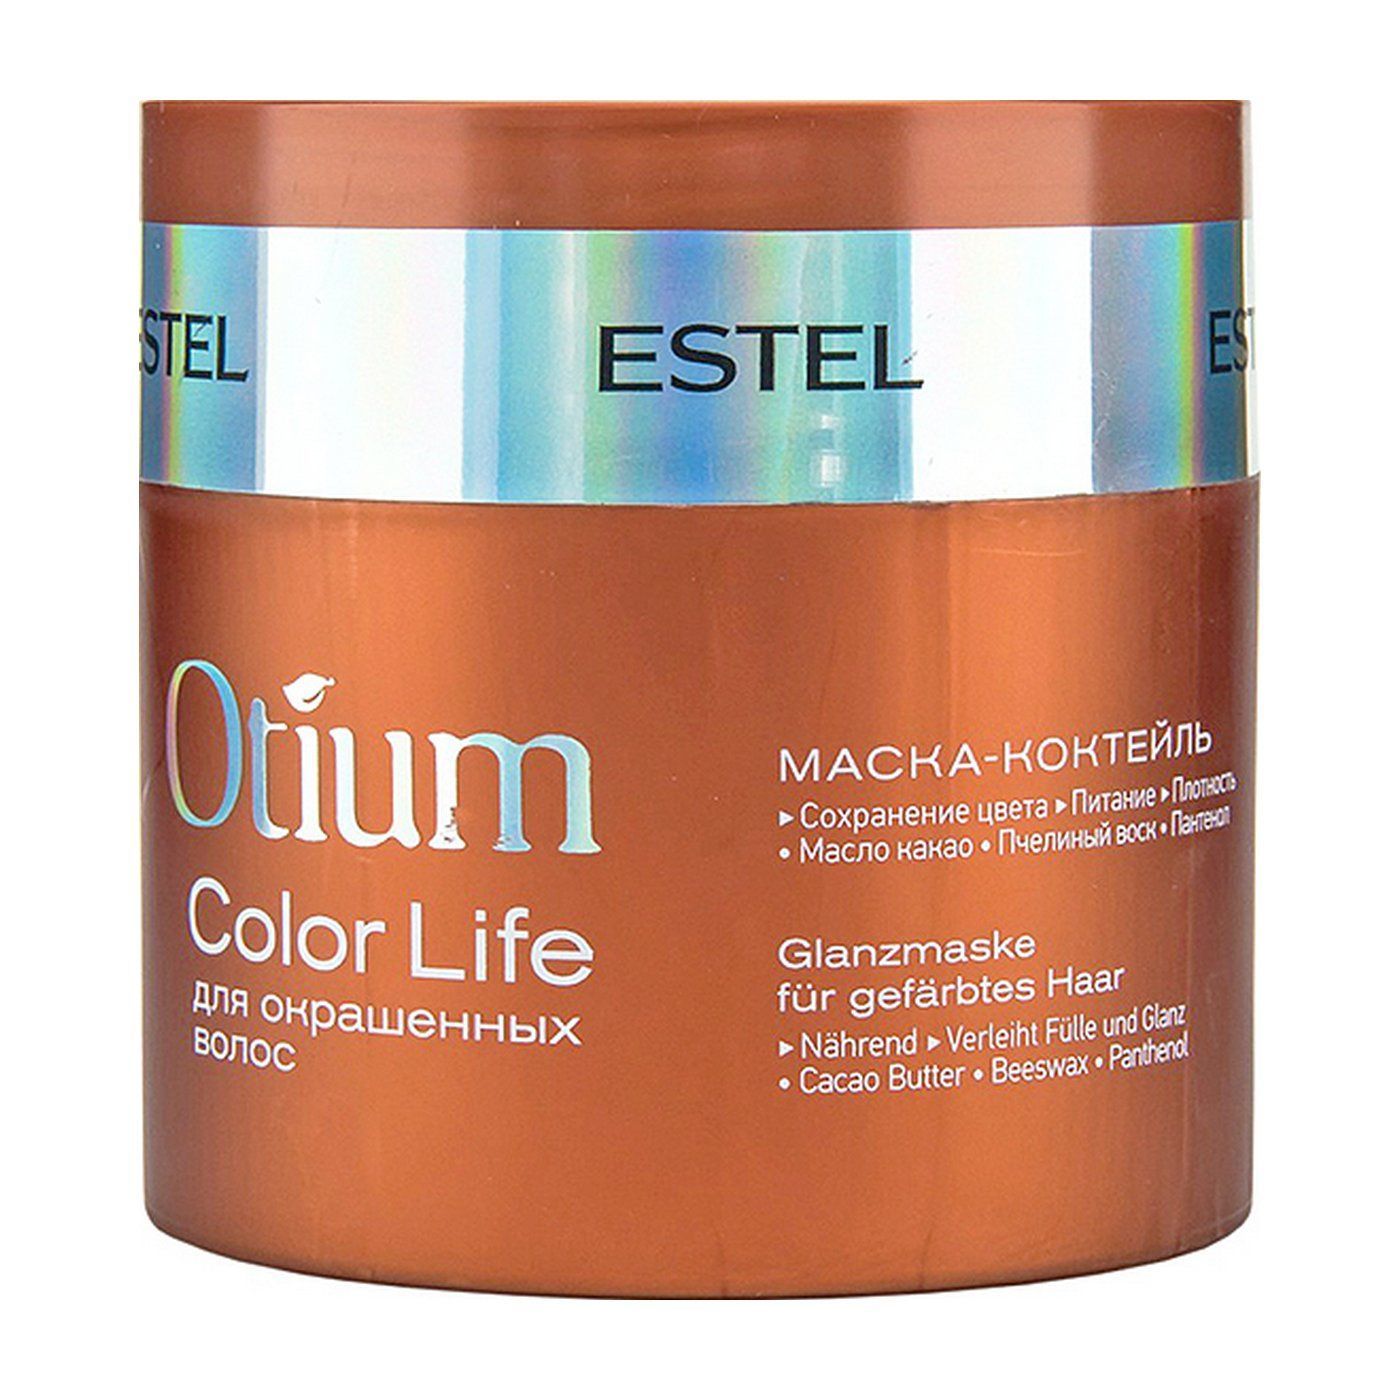 Otium маска для волос. Estel Otium Color Life маска. Маска-коктейль для окрашенных волос Otium Color Life, 300 мл. Estel/ маска-коктейль для окрашенных волос Otium Color Life (300 мл). Маска Эстель отиум для окрашенных волос.